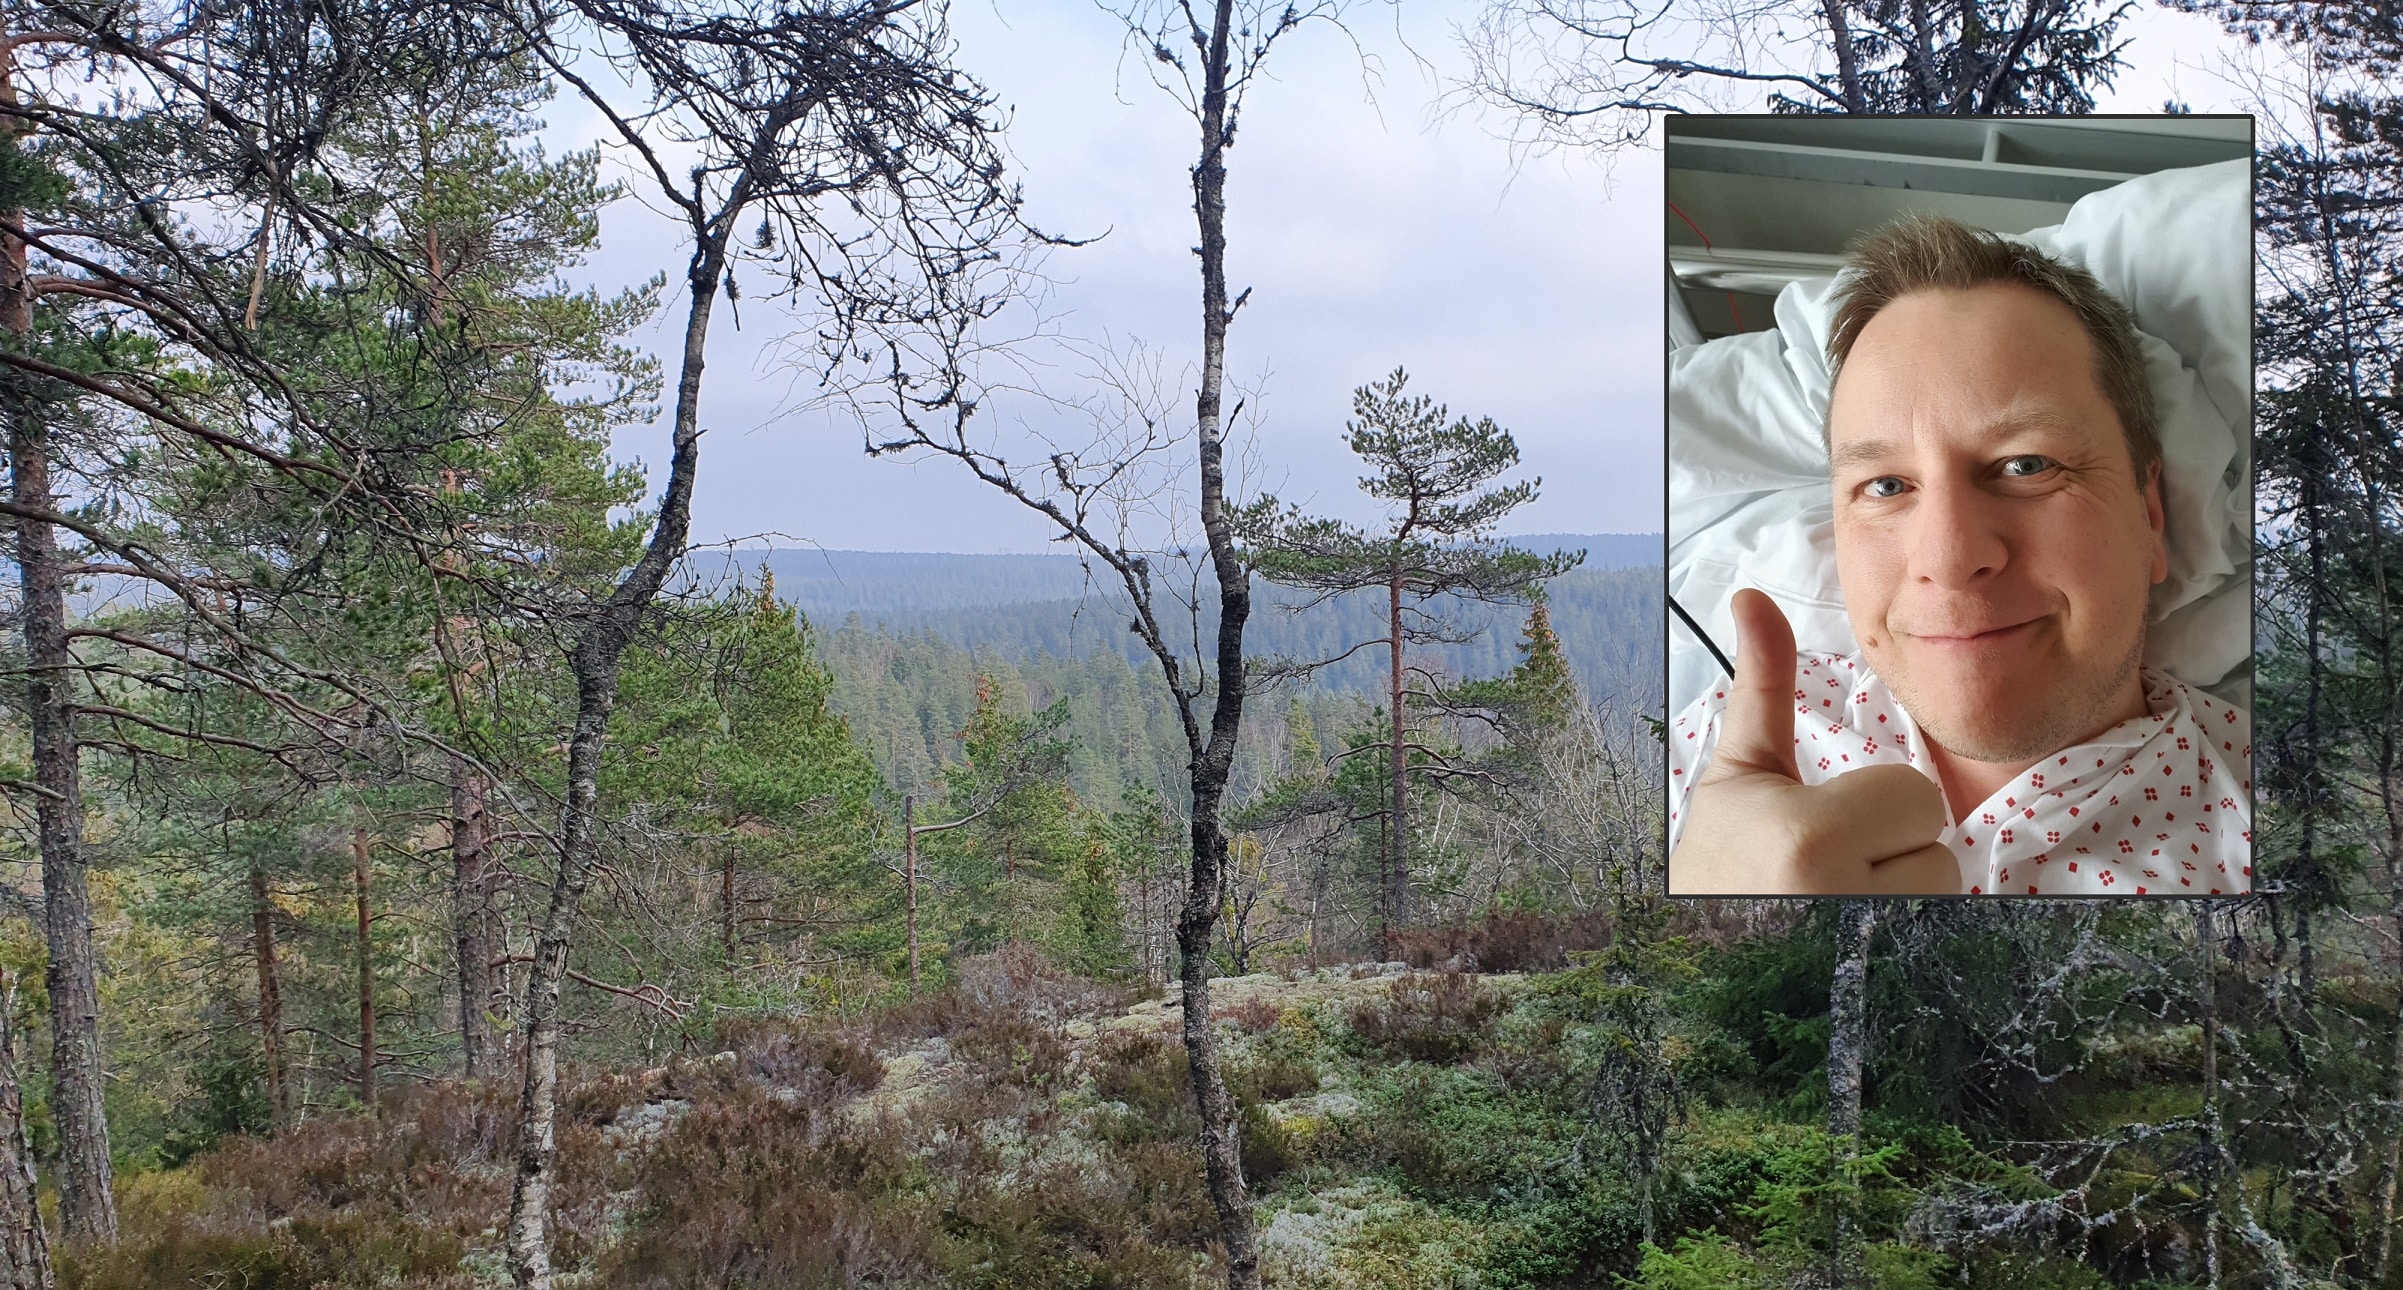 Einar Bolstad brakk beinet på tur i skogen